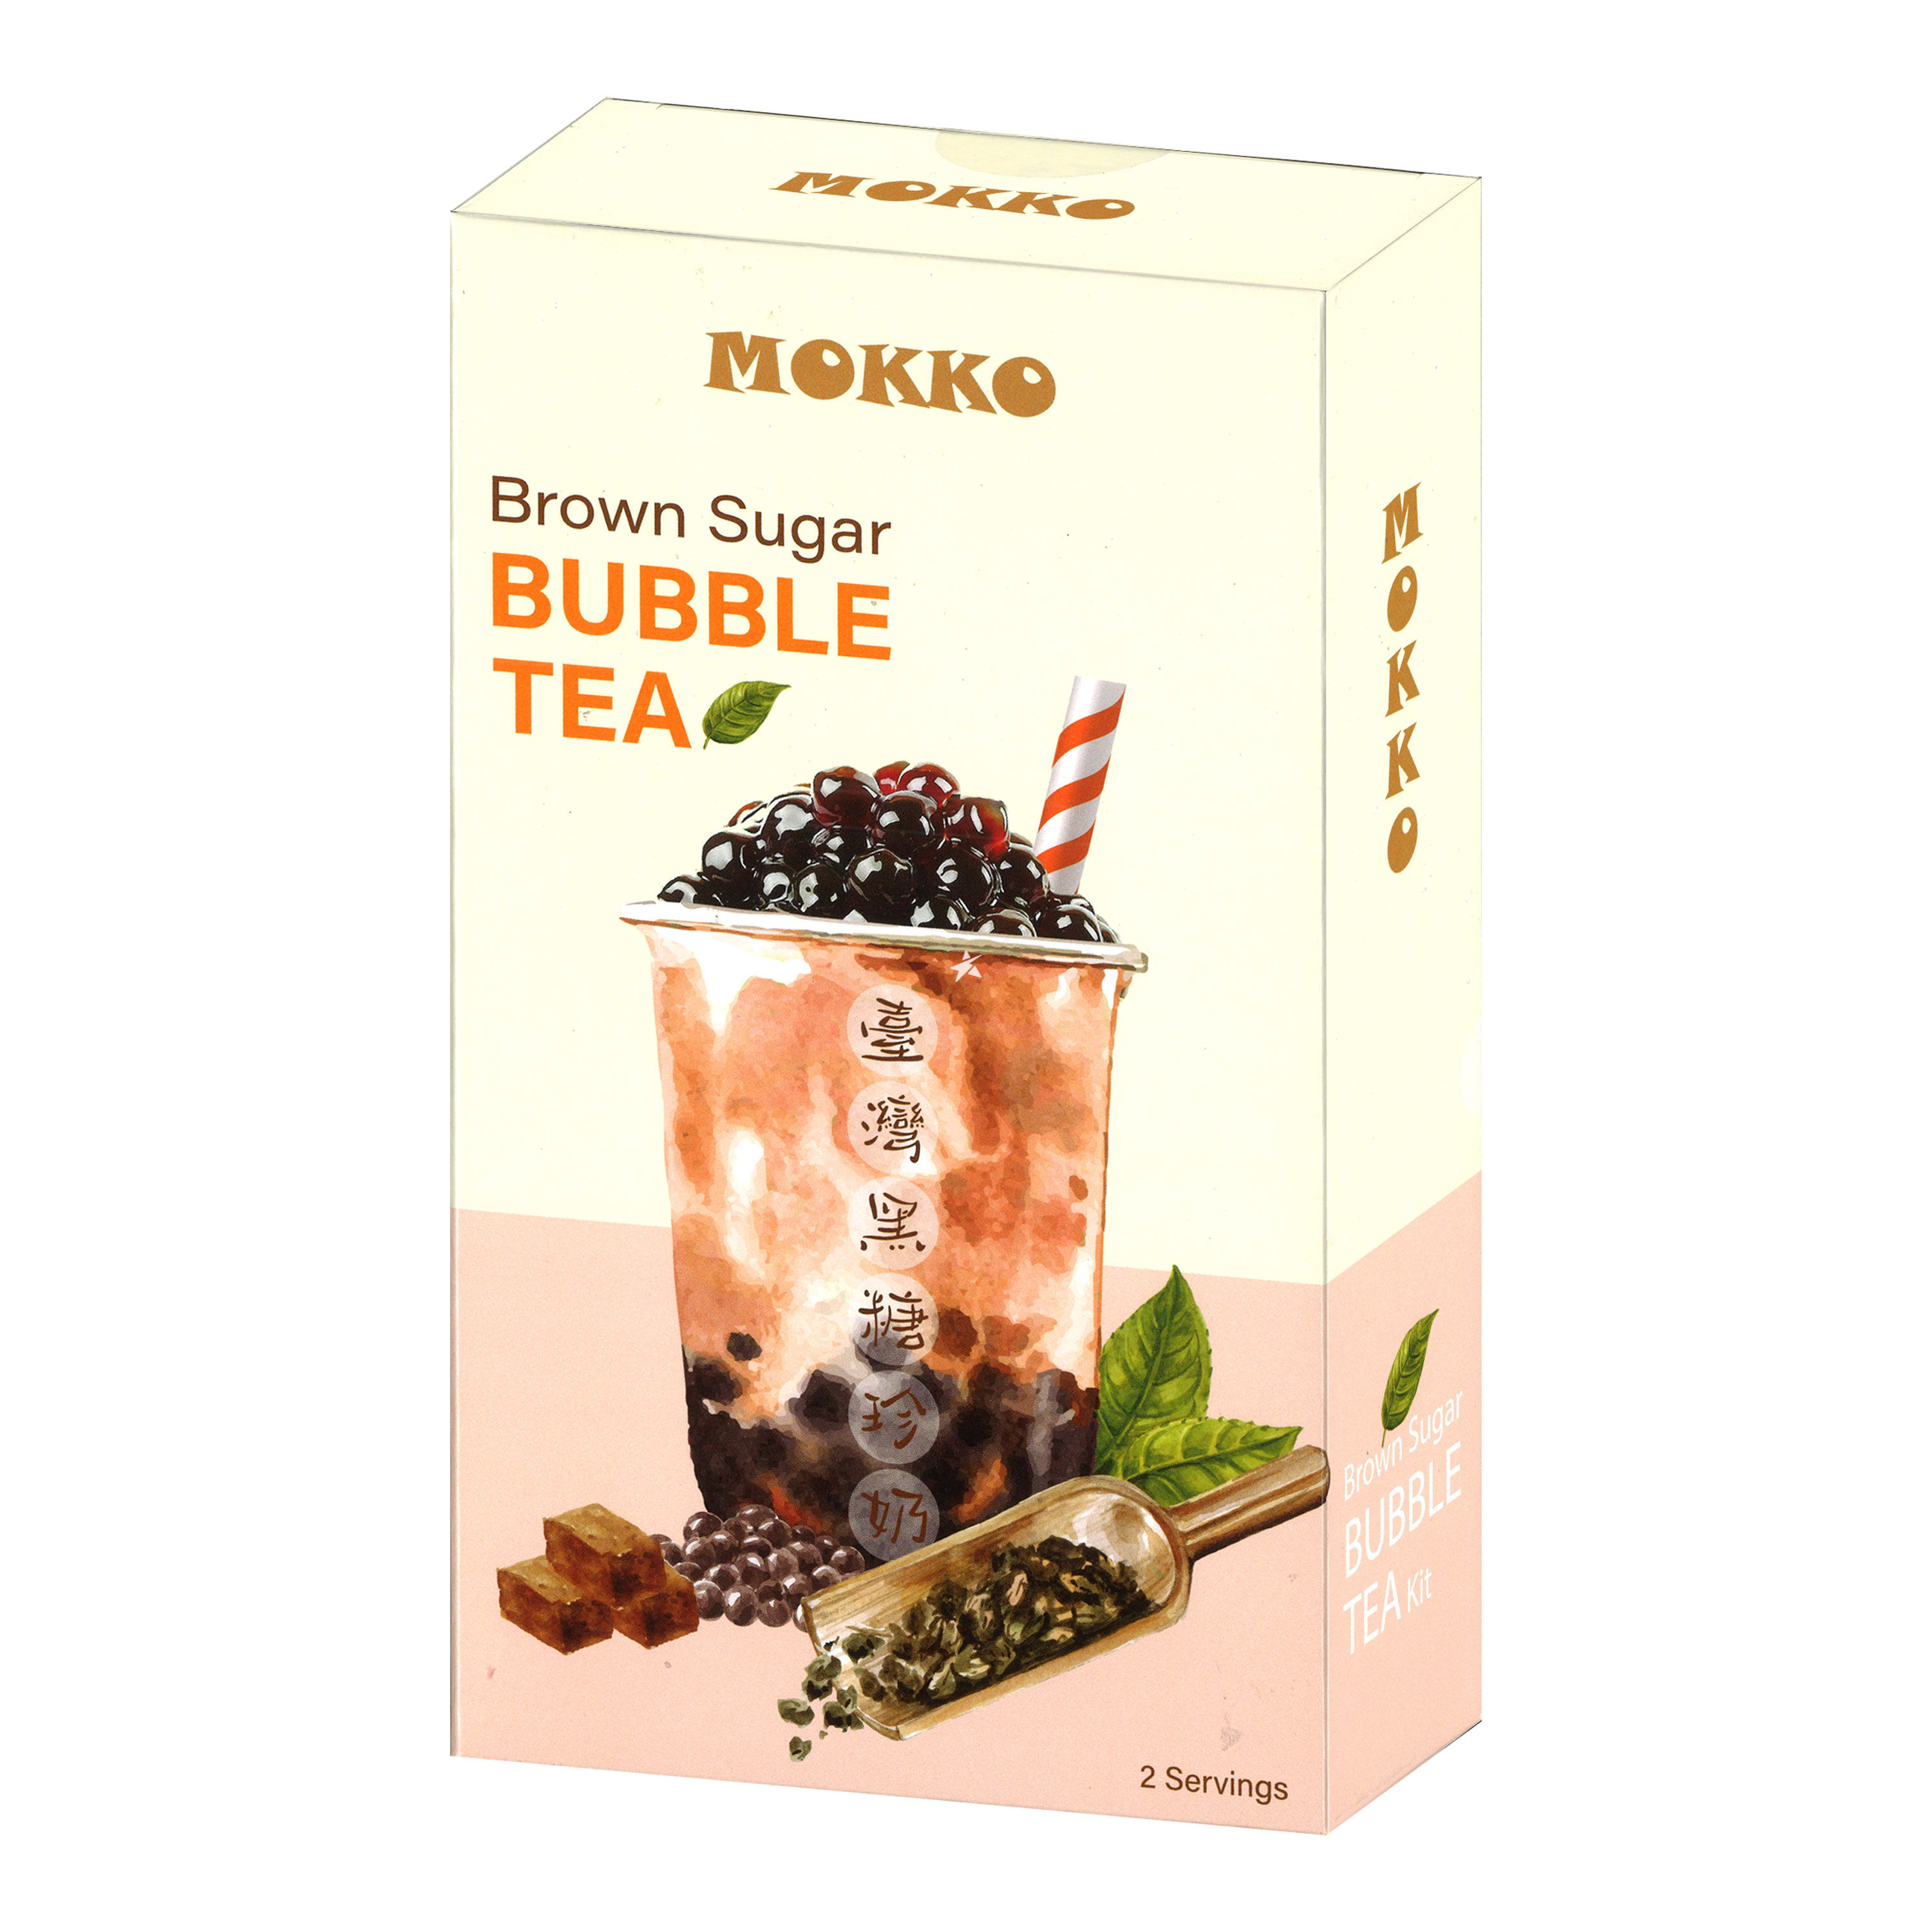 Mokko brown sugar bubble tea